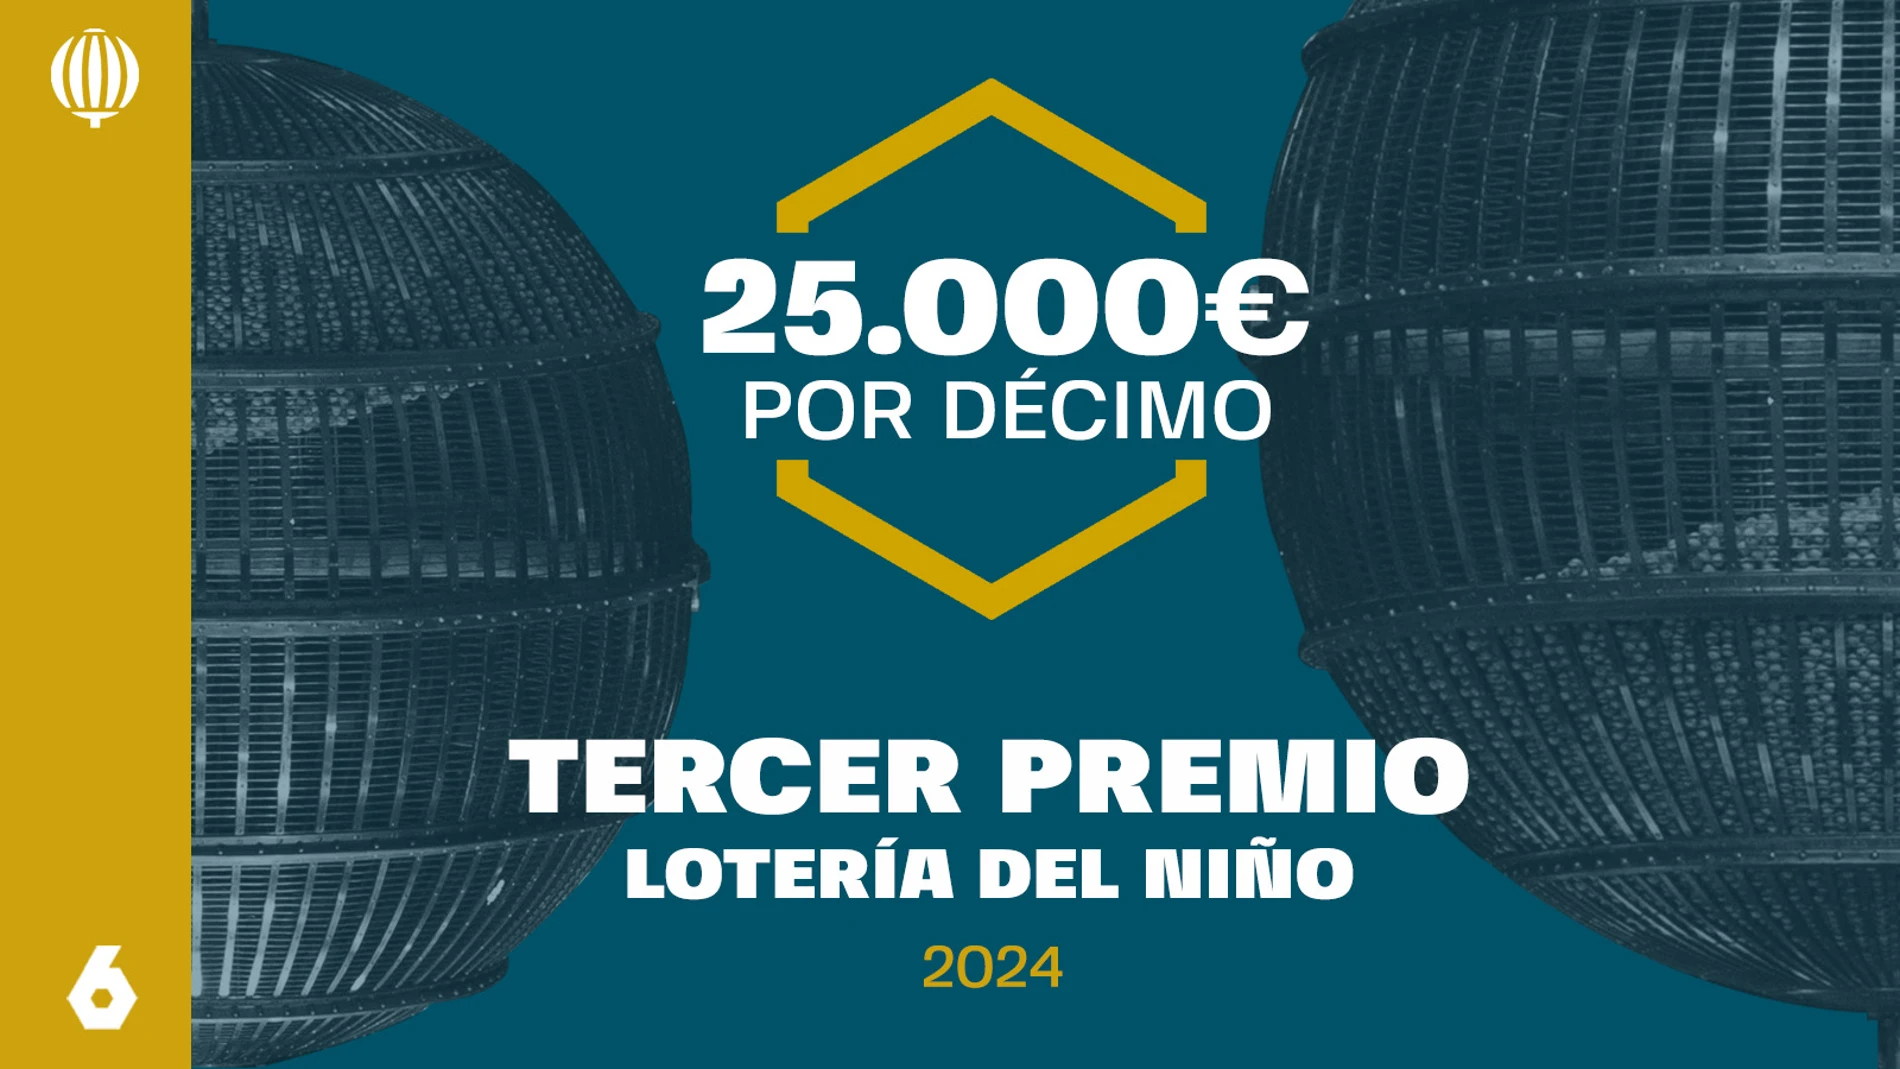 El tercer premio de la Lotería del Niño reparte 25.000 euros íntegros por cada décimo premiado